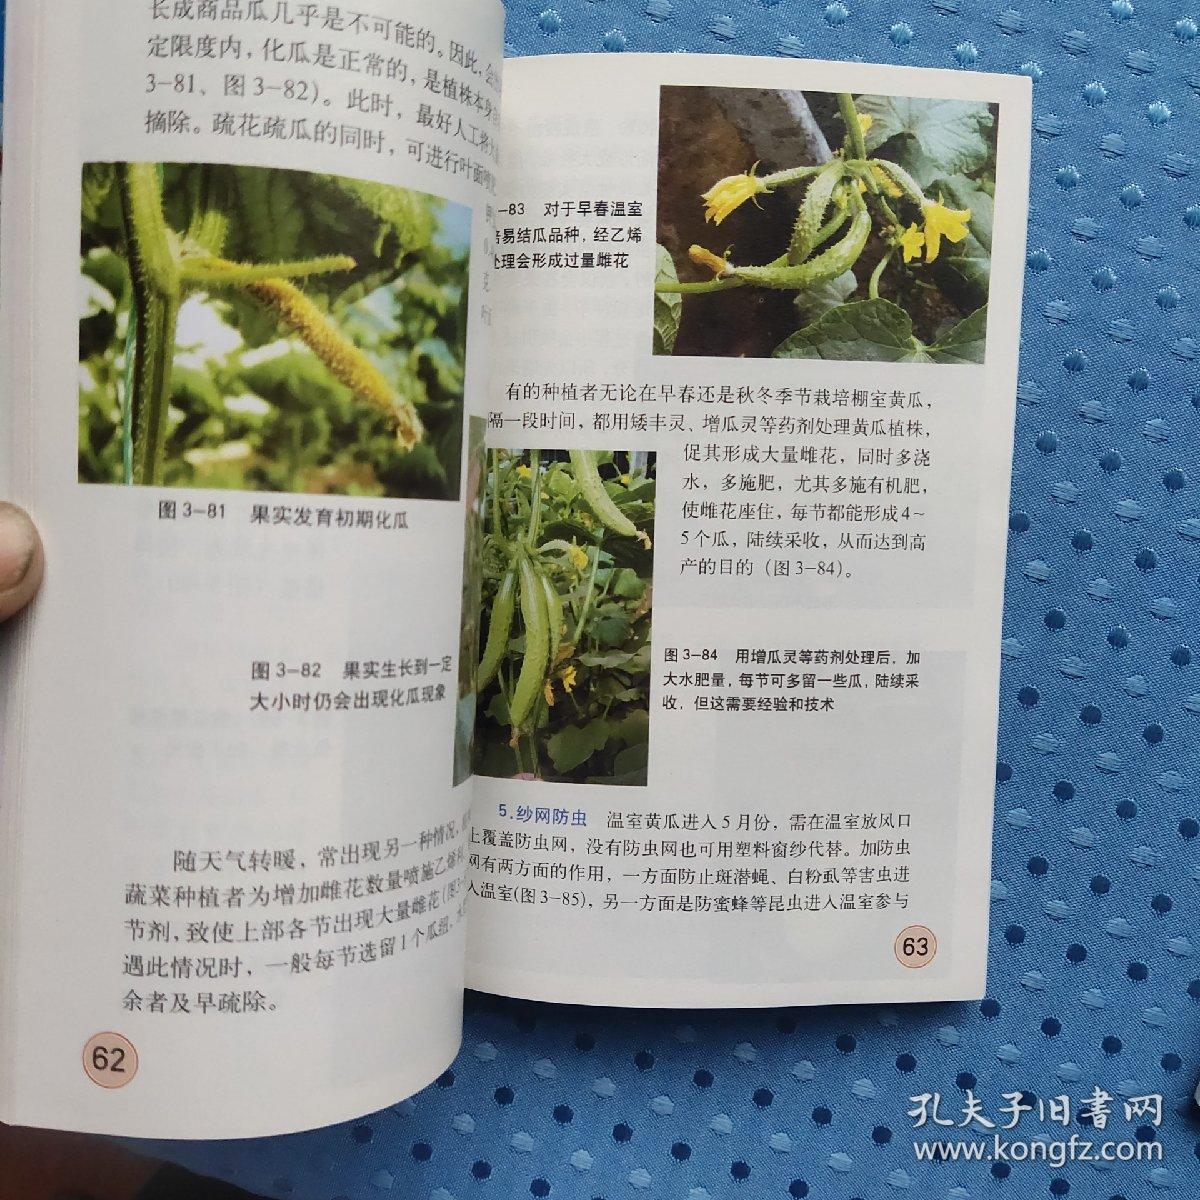 图说温室黄瓜高效栽培关键技术